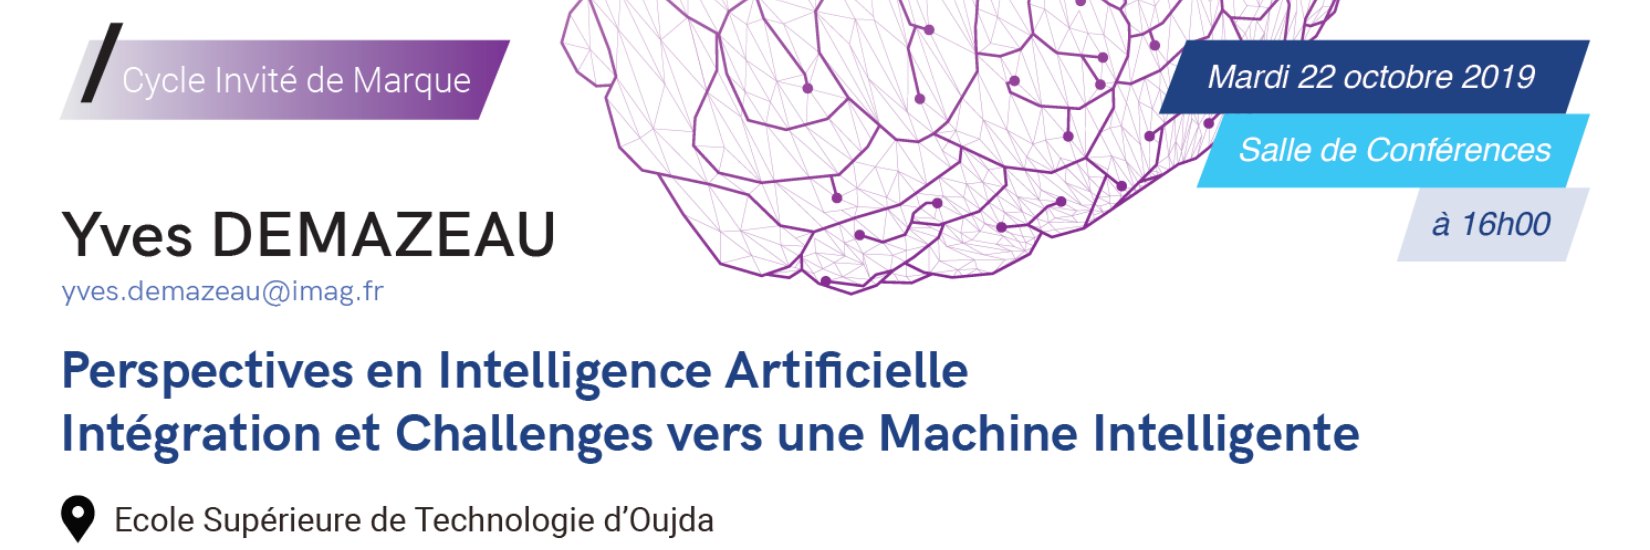 Perspectives en Intelligence Artificielle Intégration et Challenges vers une Machine Intelligente